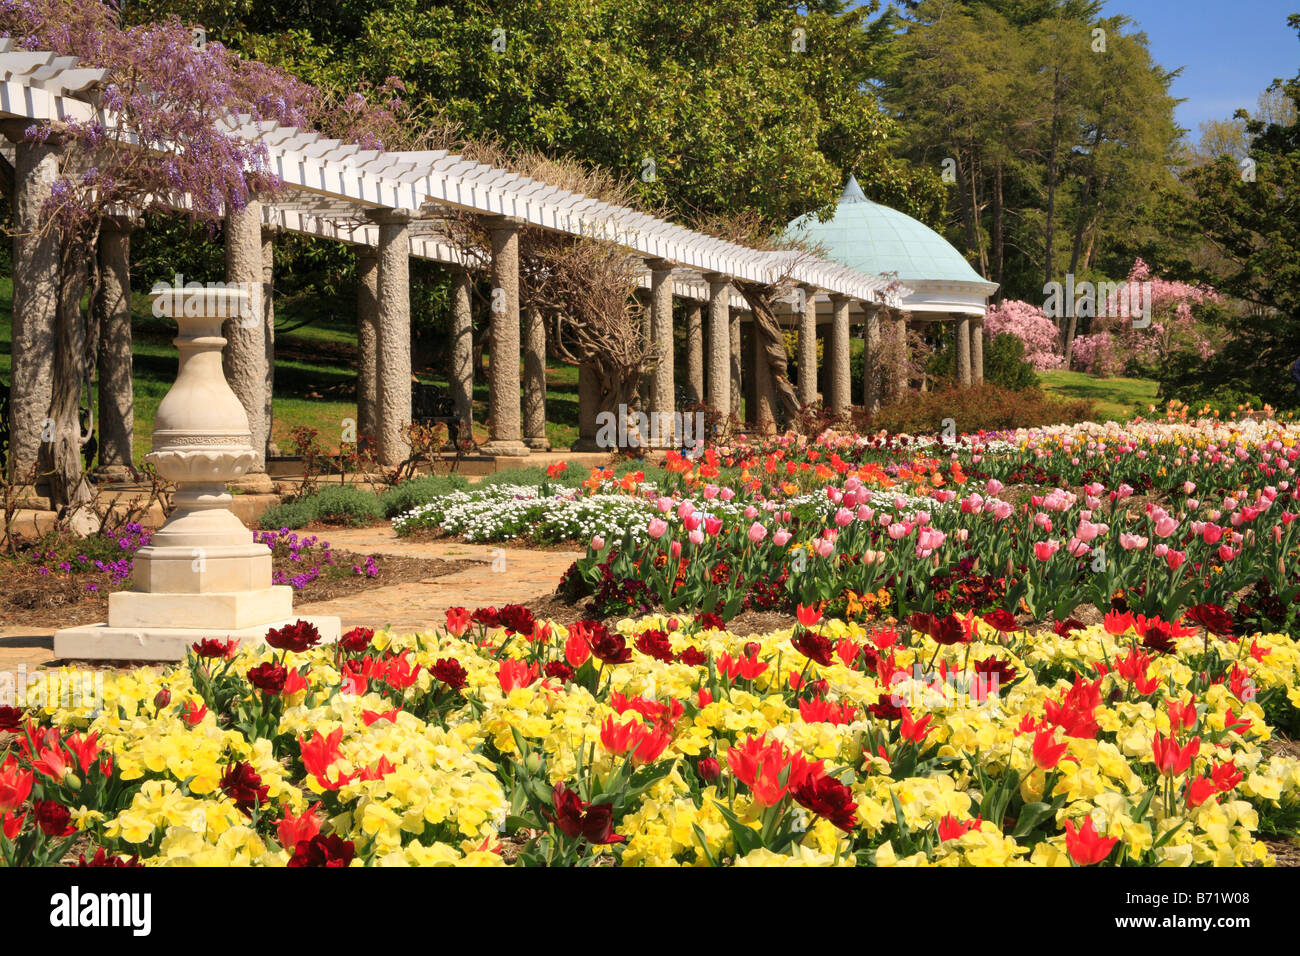 Italian Garden at Maymont Park, Richmond, Virginia, USA Stock Photo